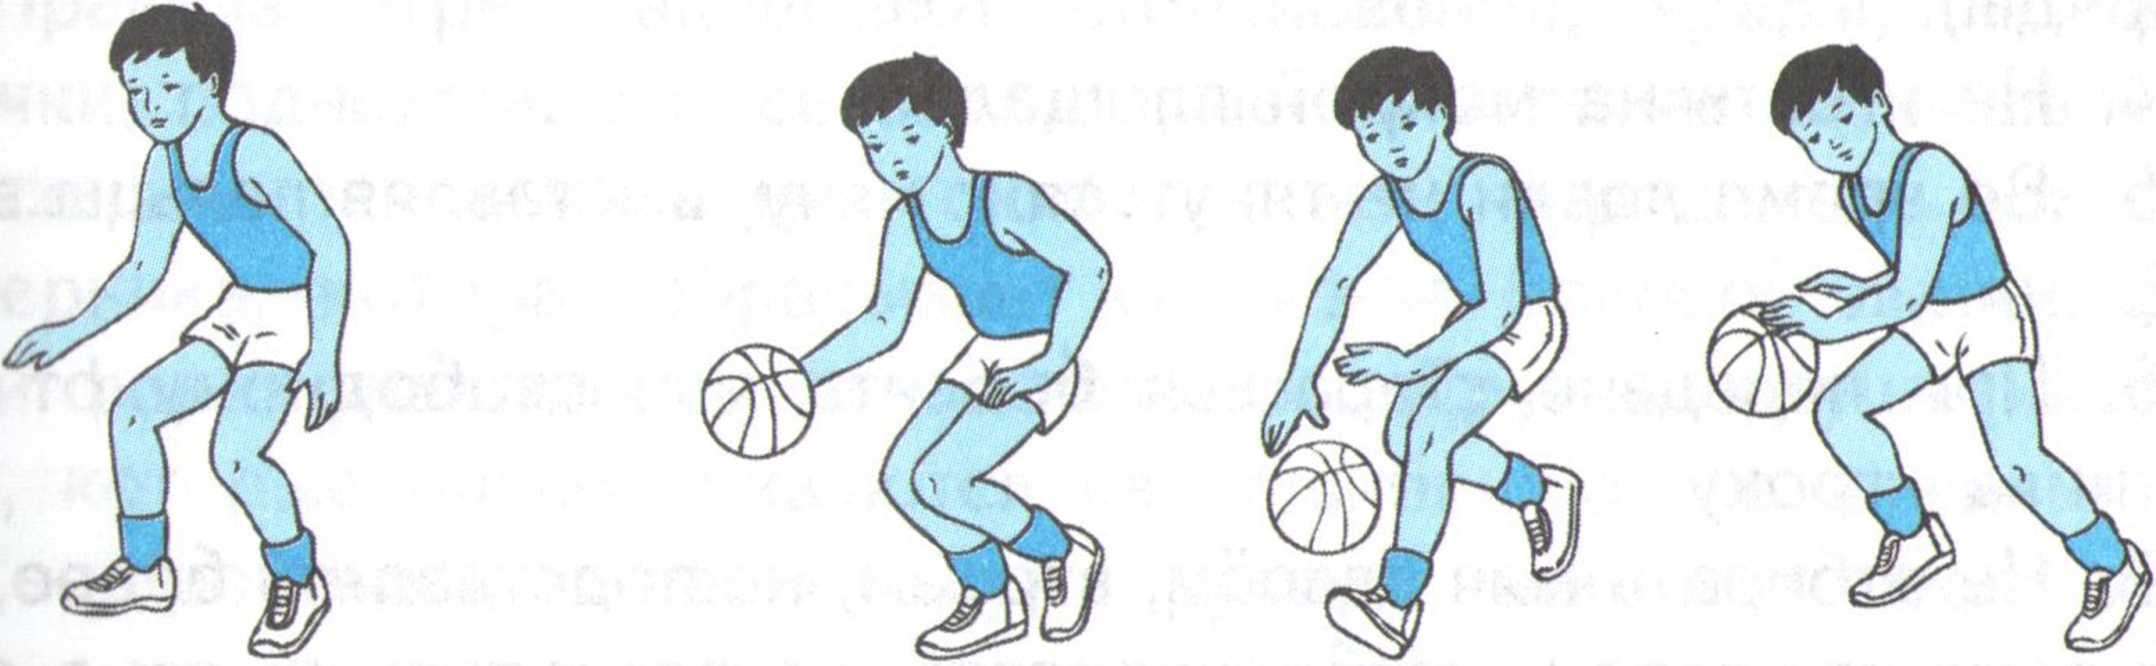 С мячом вправо. Упражнения на ловкость с мячом. Основная стойка с мячом. Упражнения с мячом в баскетболе в движении. Упражнения на развитие ловкости с мячом.